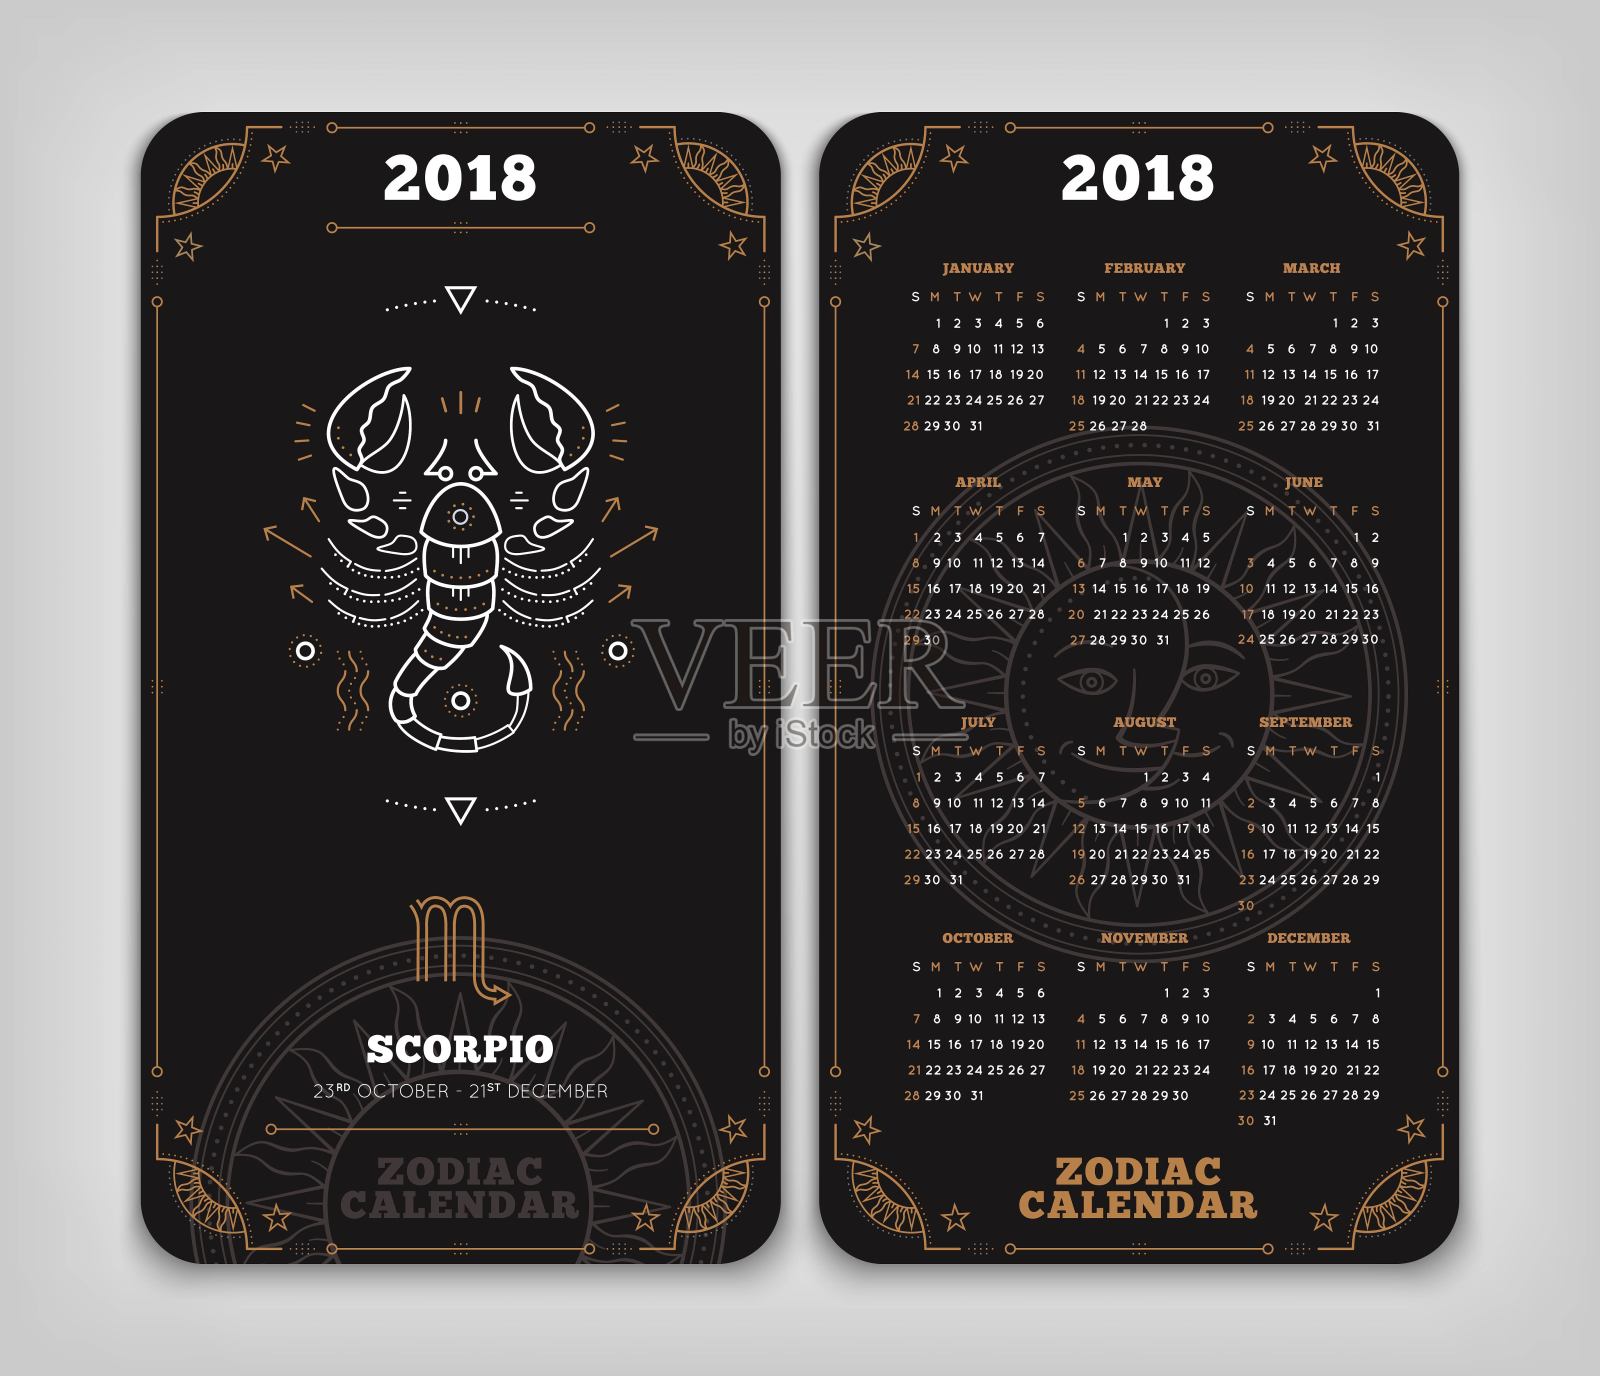 天蝎座2018年生肖日历口袋大小垂直布局双面黑色设计风格矢量概念插图插画图片素材